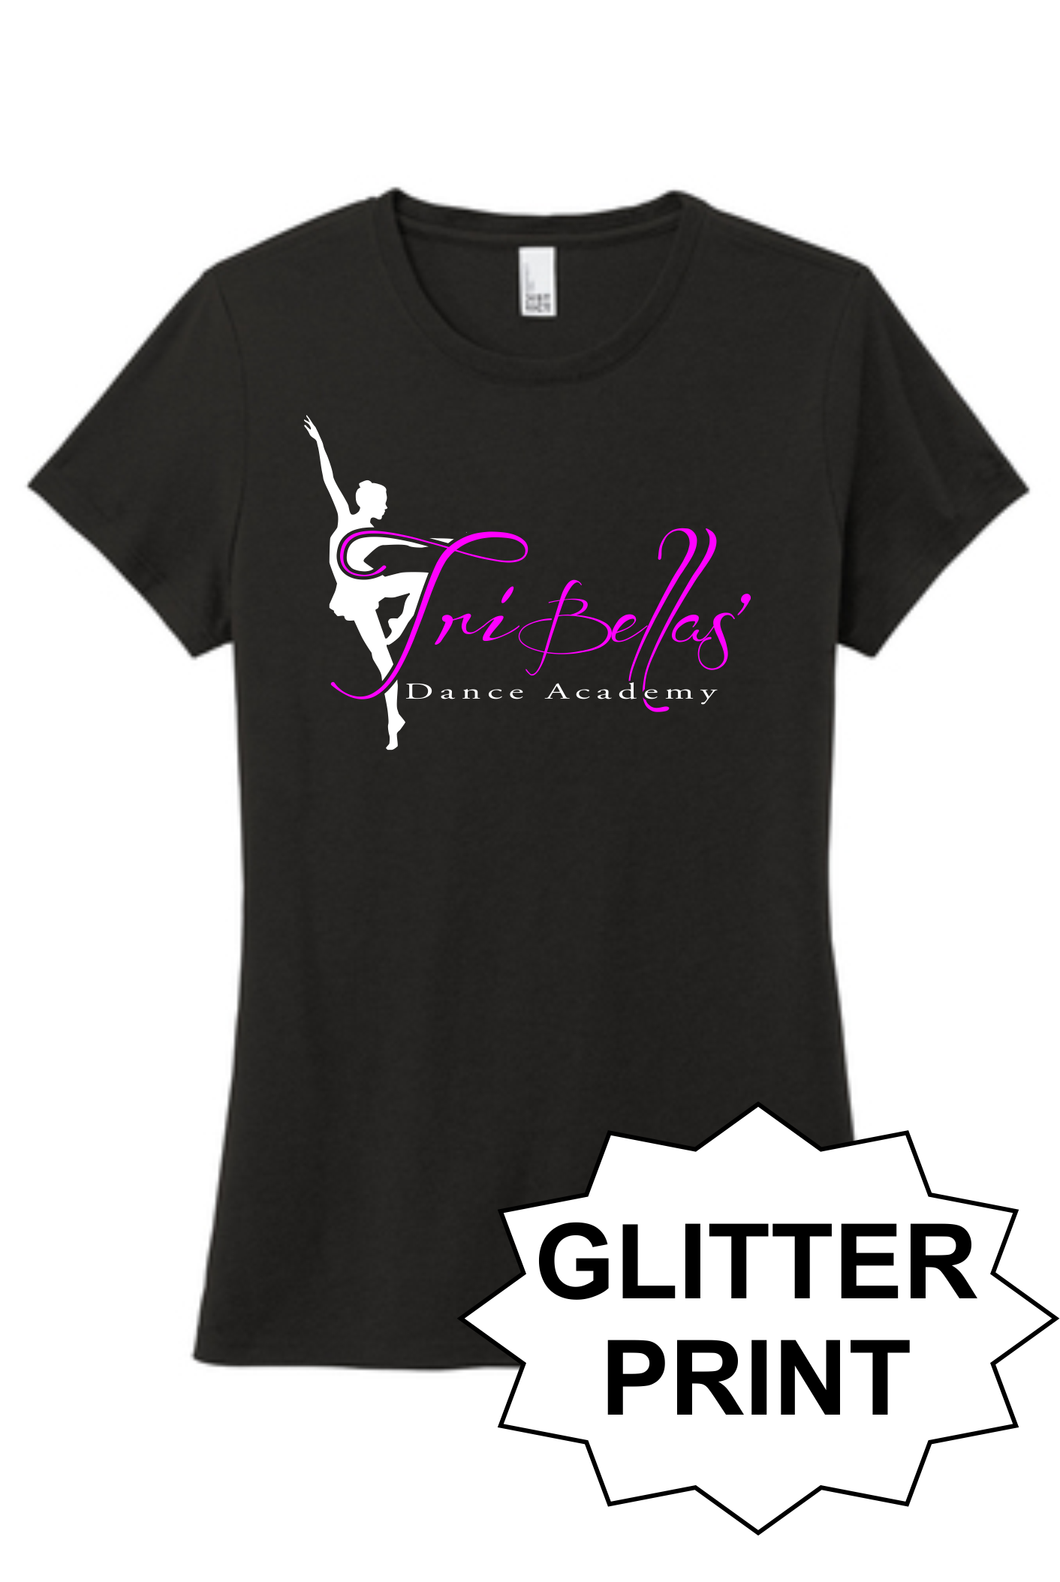 TriBellas - Glitter Print Ladies Triblend T-Shirt